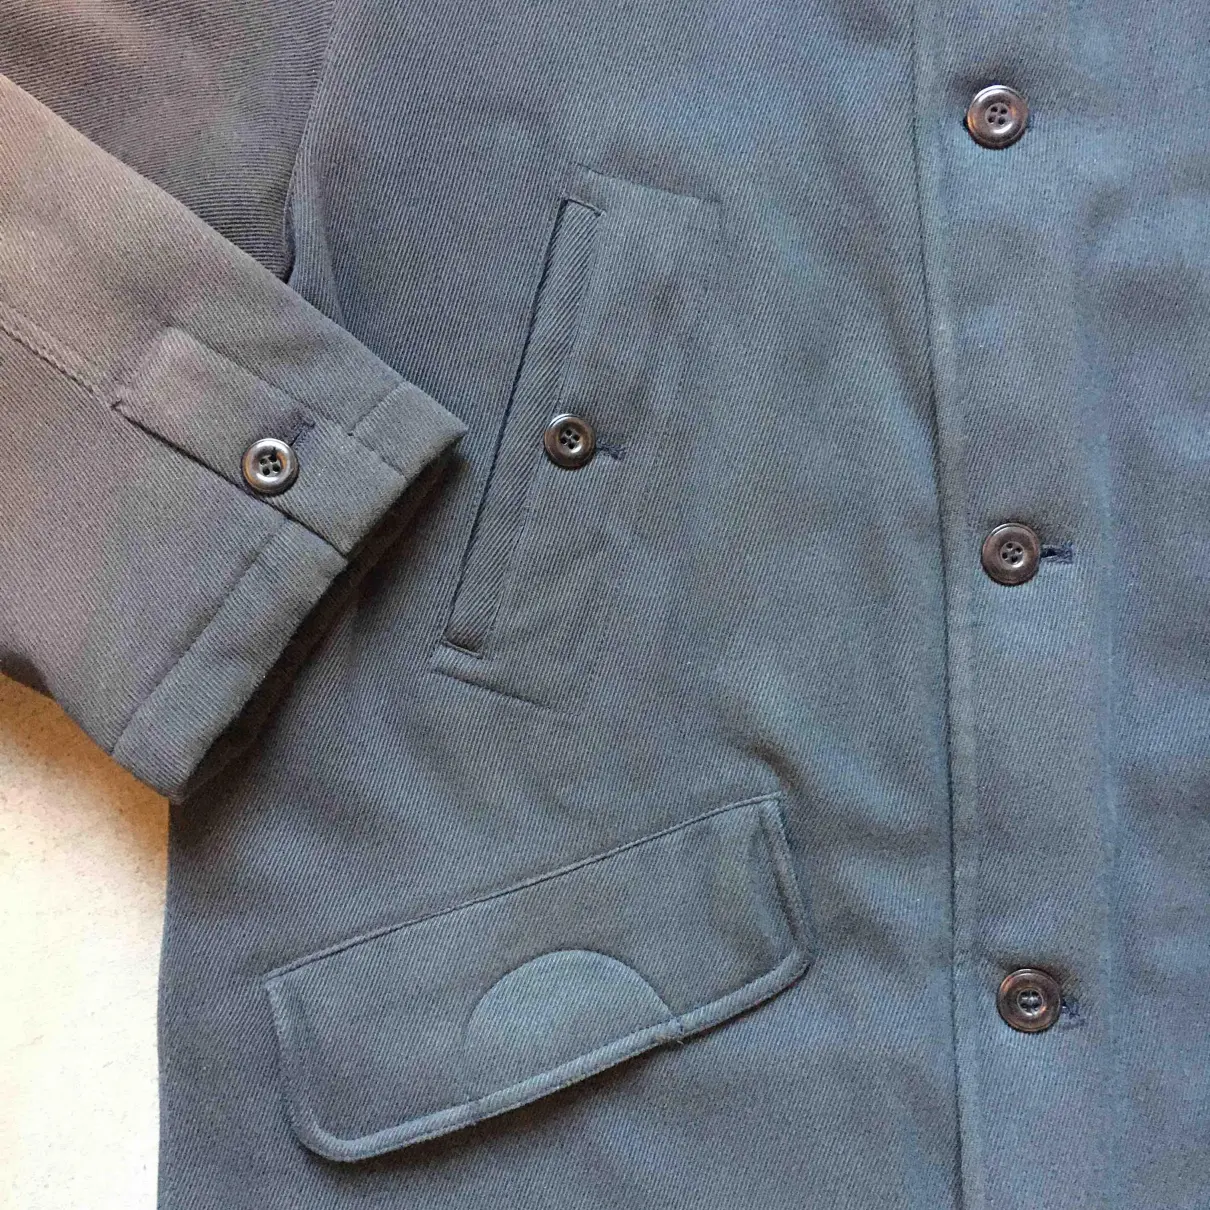 Jacket Missoni - Vintage